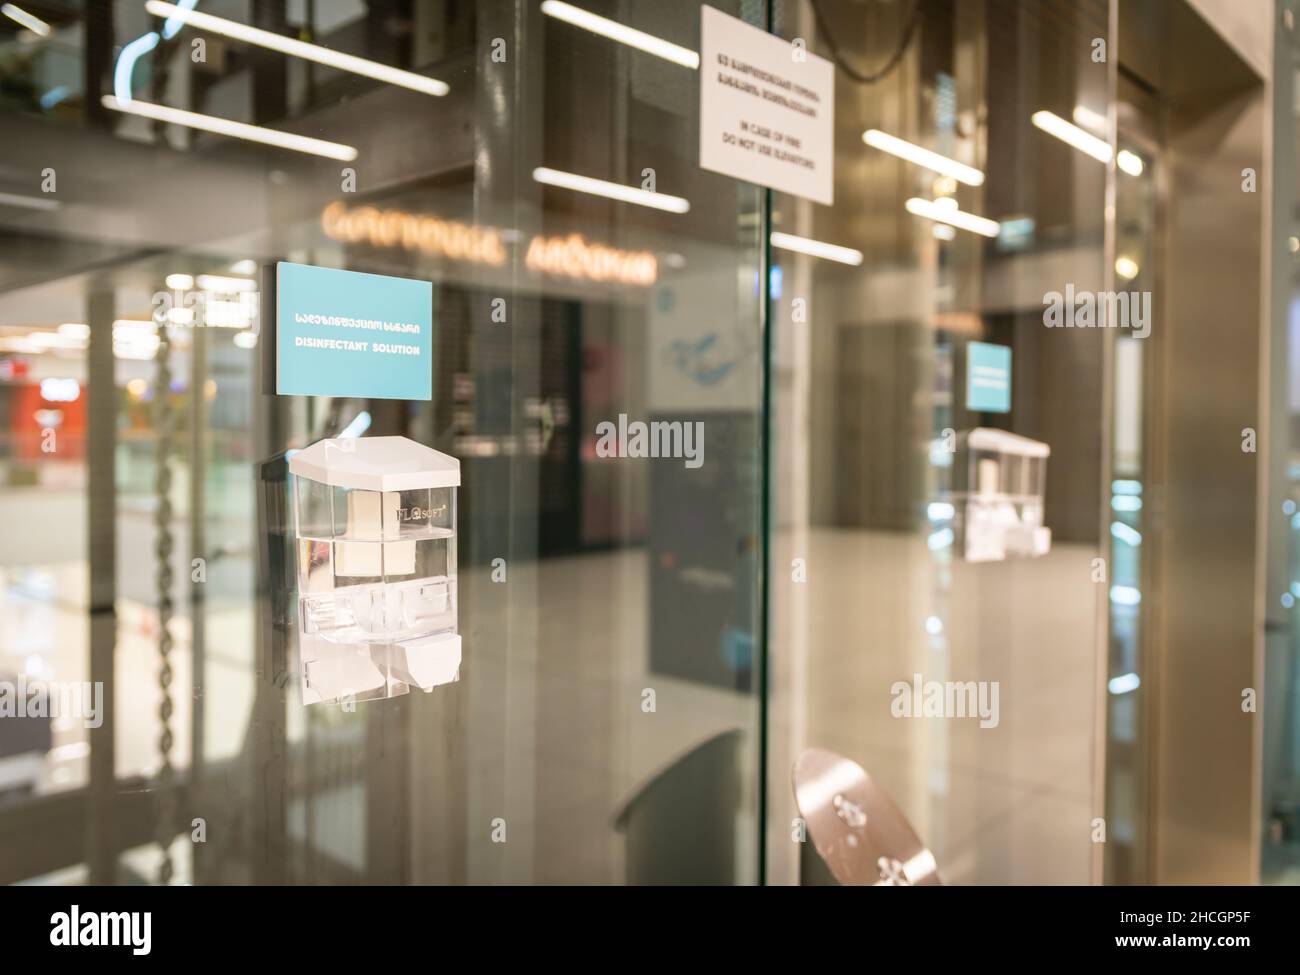 Händedesinfektionsbehälter neben dem Aufzug im Einkaufszentrum Gallerie in Tiflis angebracht. Desinfektionslösungen an öffentlichen Orten. Tiflis. Georgien.01 Stockfoto